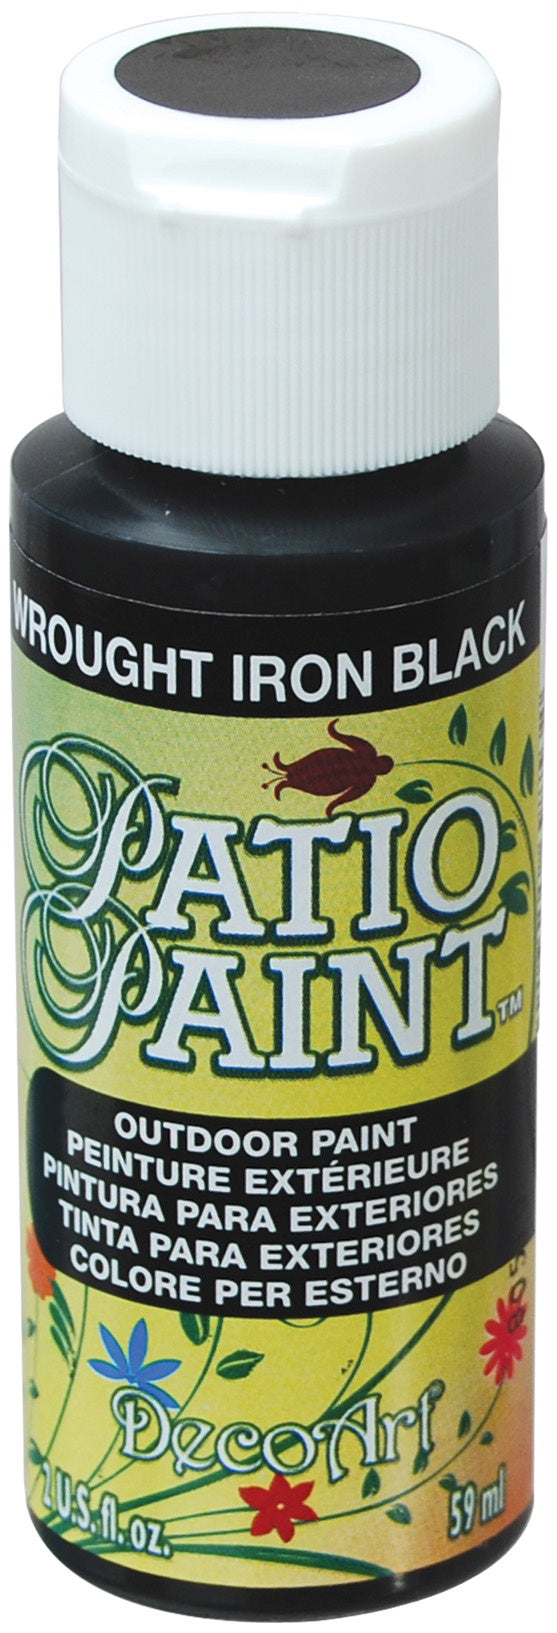 Deco Art Patio Paint 2oz - Wrought Iron Black